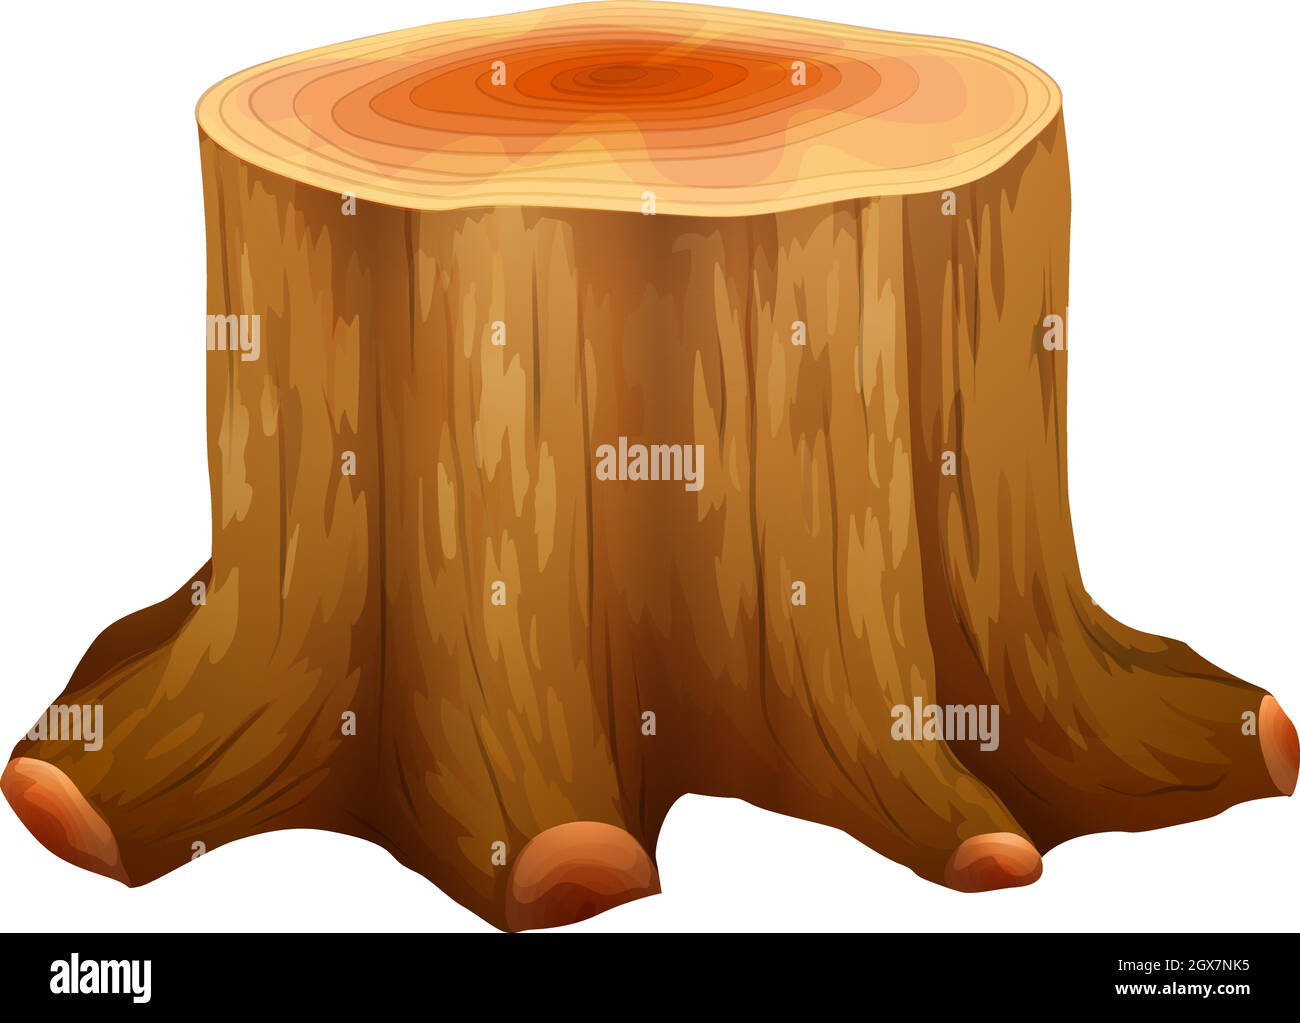 Ein Stumpf eines großen Baumes Stock Vektor